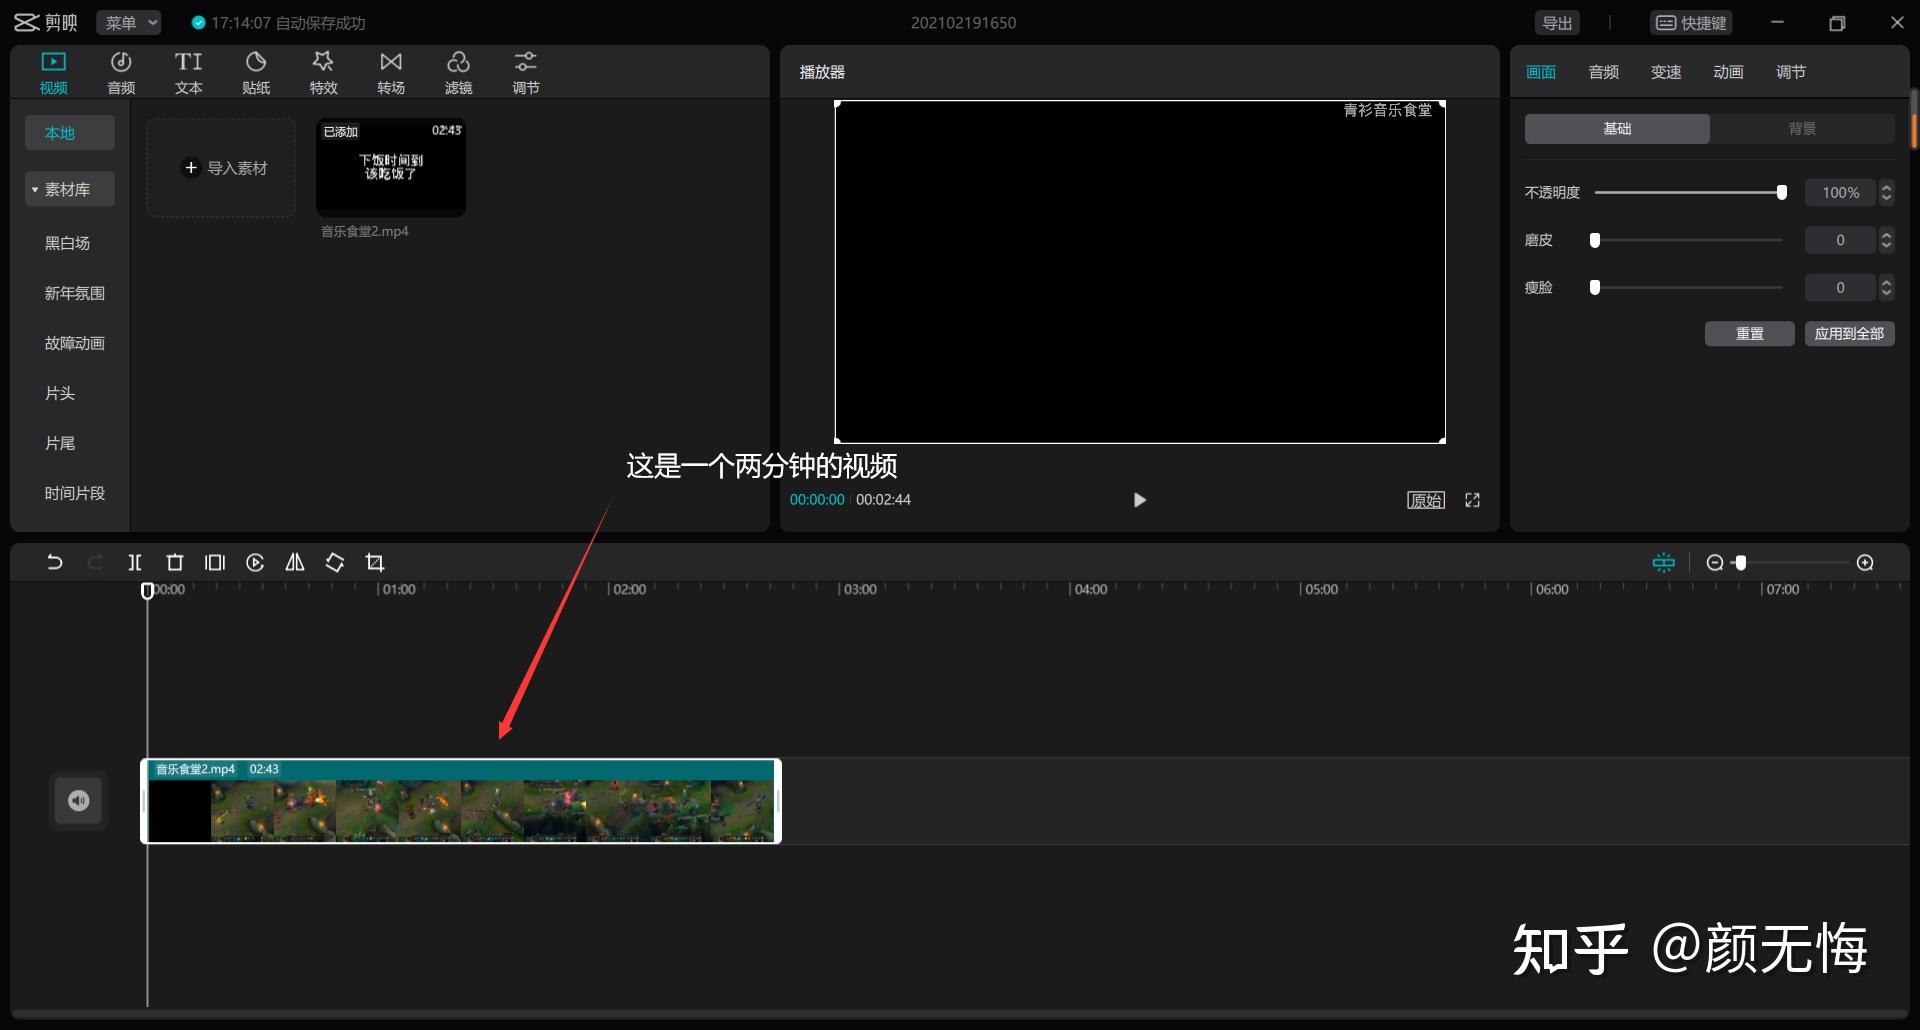 剪映的视频导出速度用一个字来形容就是快,同样一分钟的视频pr可能